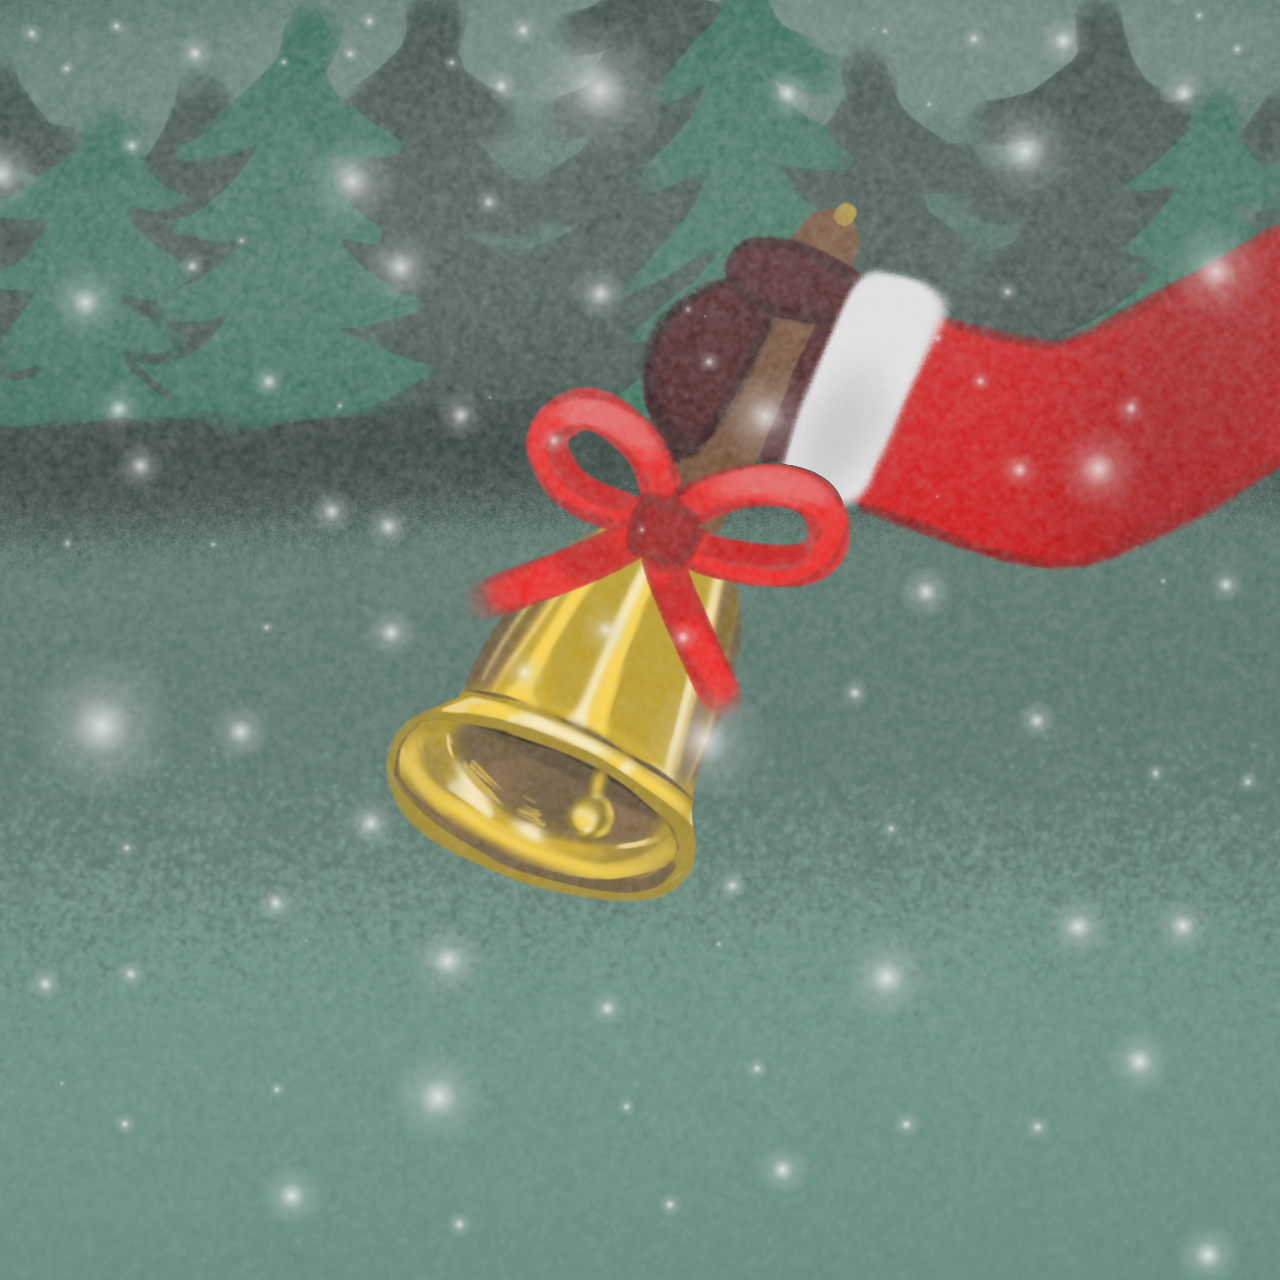 Das Bild ist gemalt. Vor einem grünen Hintergrund sieht man die Hand eines Weihnachtsmannes. Er hält eine goldene Glocke in seiner Hand.